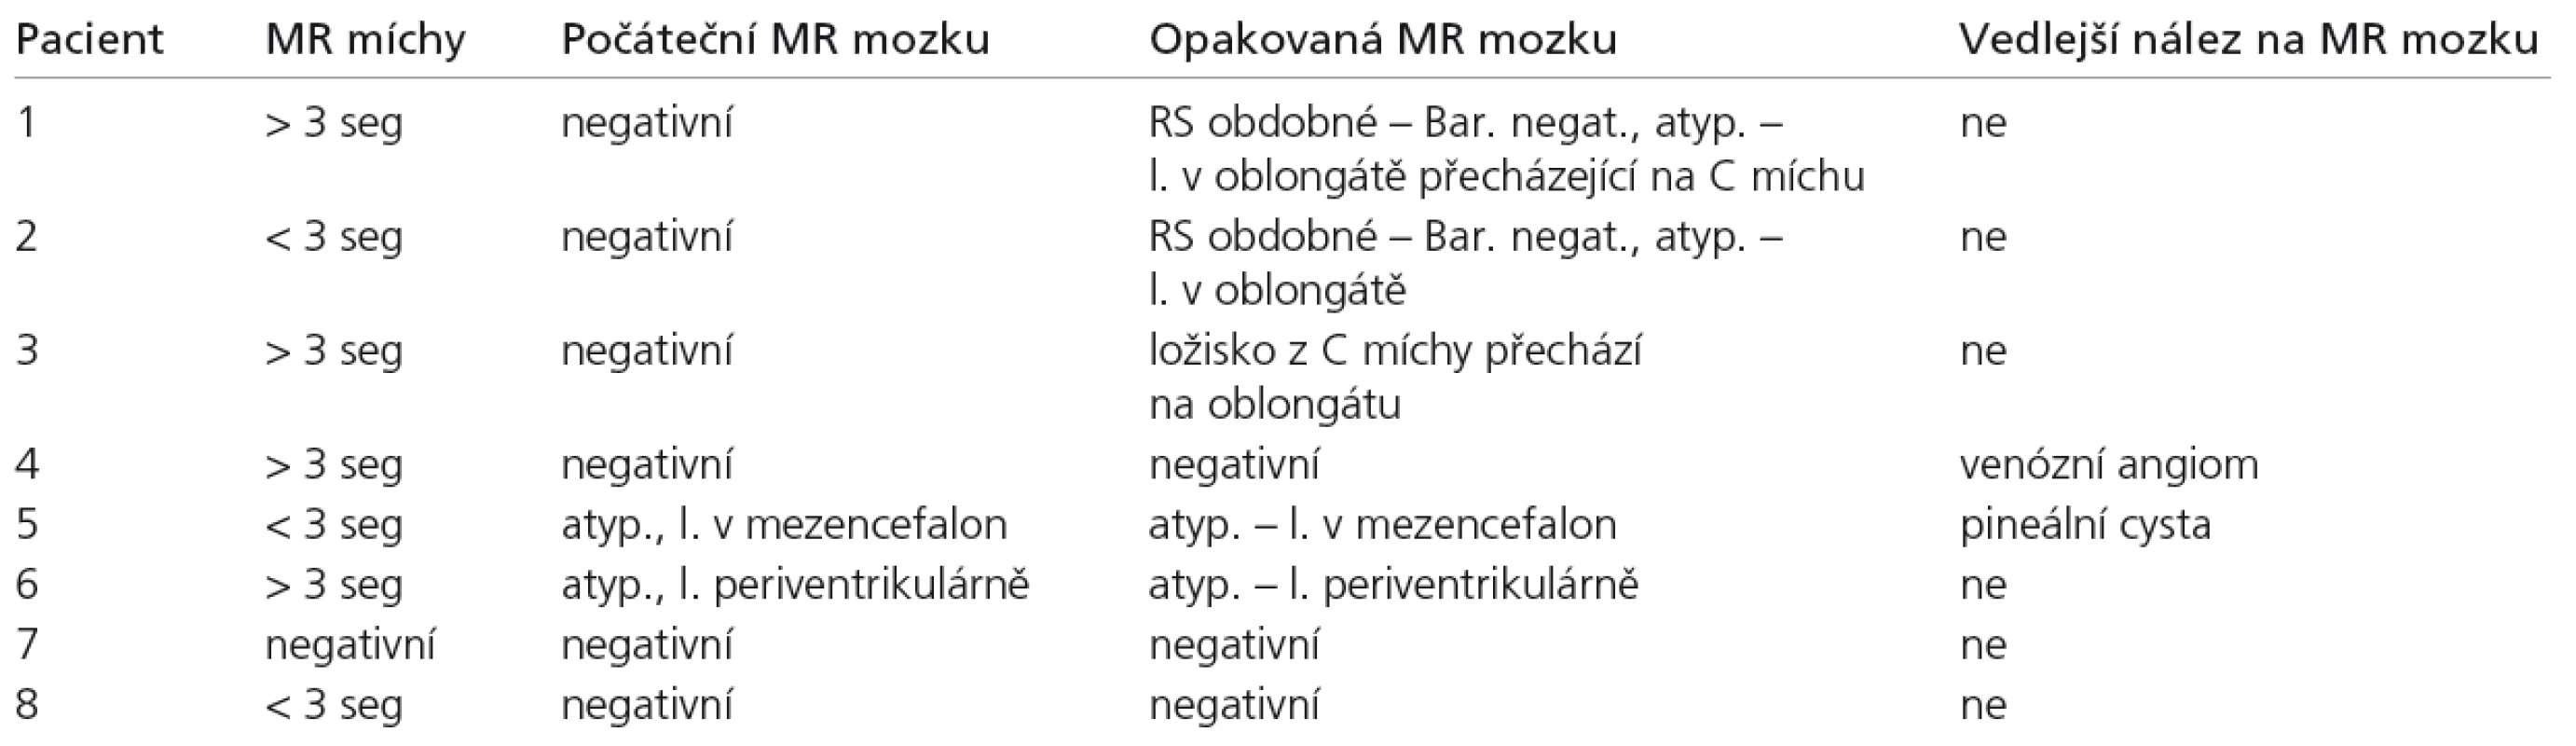 MR nálezy, MR míchy hodnoceno, zda je intramedulární ložisko větší nebo menší než je výška tří obratlových těl. 
MR mozku, nález rozdělen do čtyř skupin, RS podobný, atypický, nespecifický, negativní. U skupiny RS podobné je hodnoceno, zda nález na MR splňuje Barkhofova kritéria (revidovaná McDonaldova kritéria) [12,13].